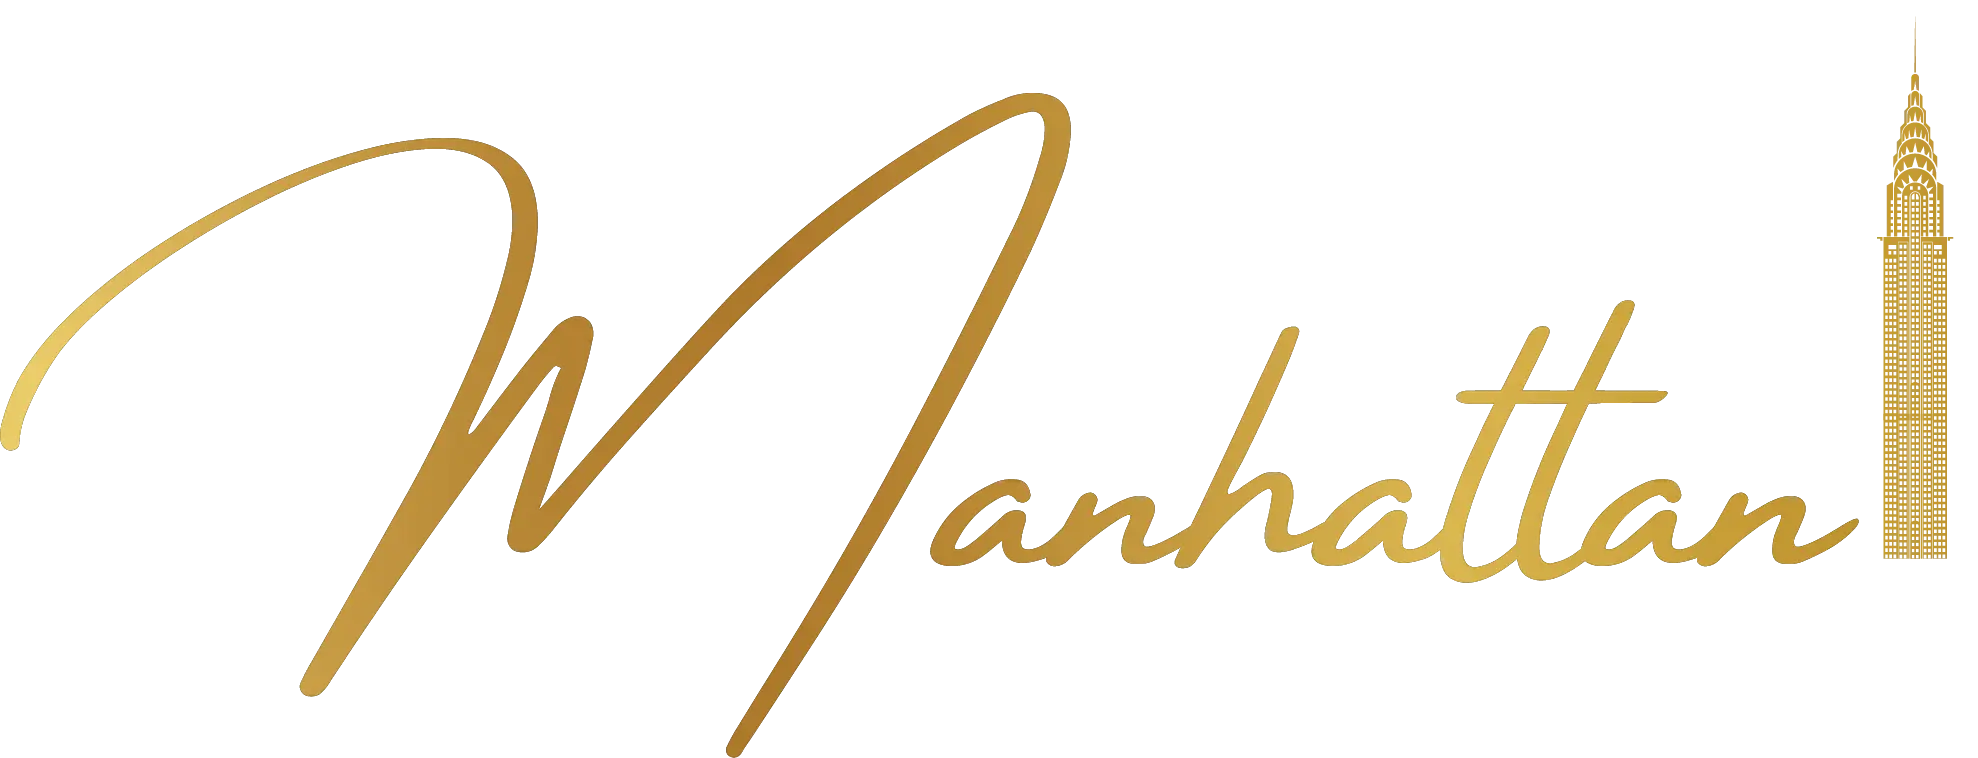 Logo Samana manhattan phase 2 